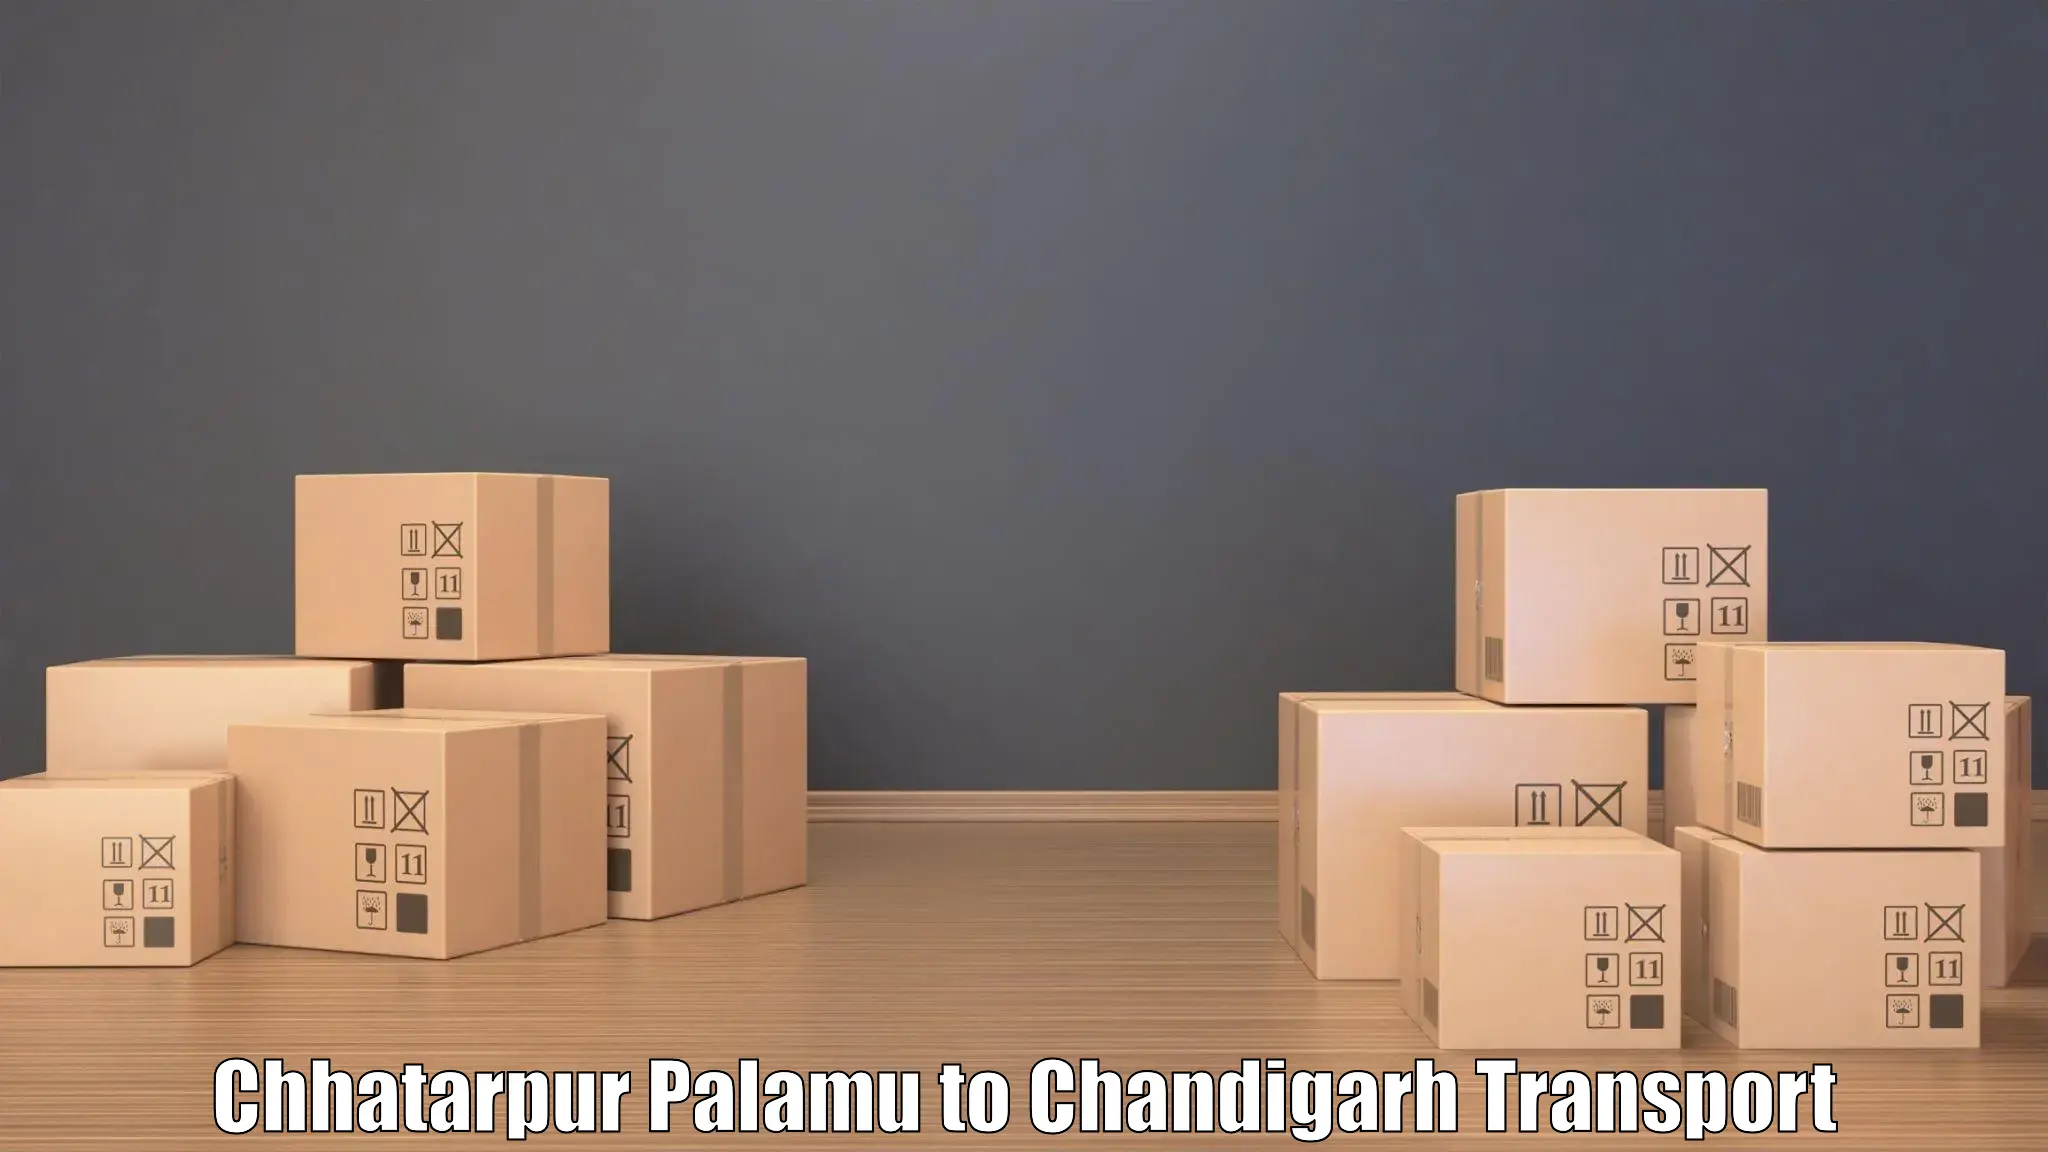 Lorry transport service Chhatarpur Palamu to Chandigarh